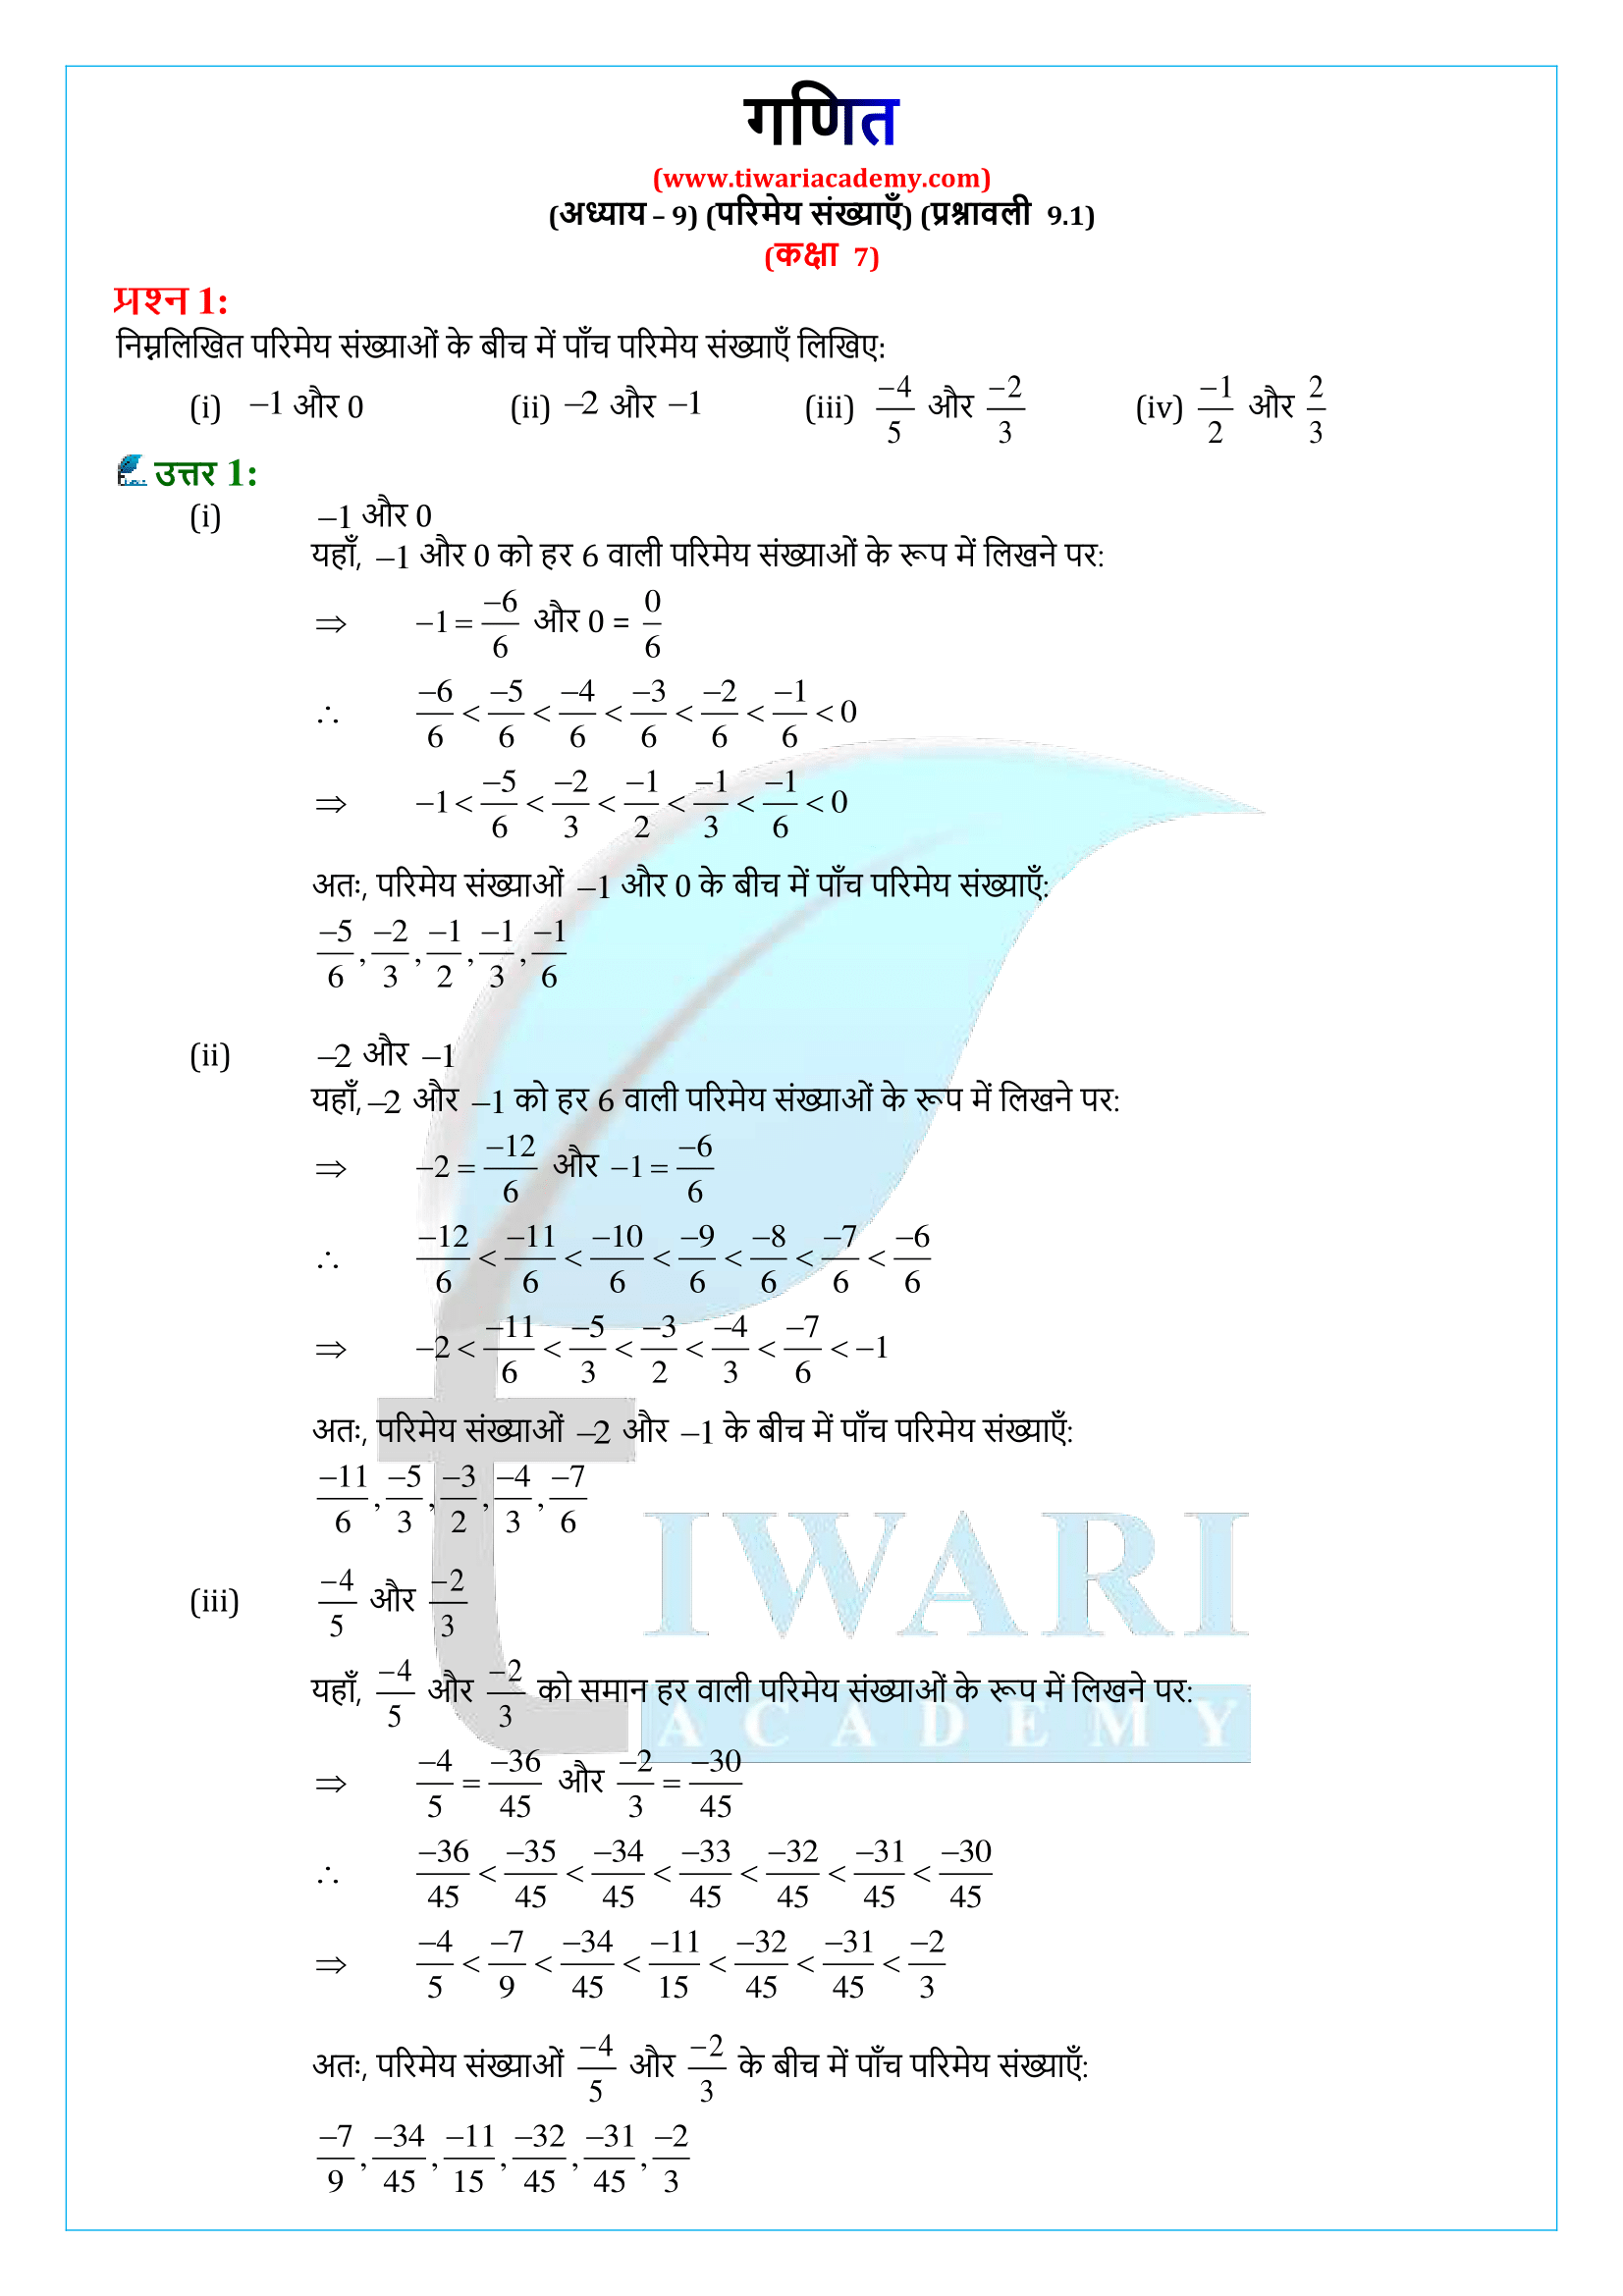 कक्षा 7 गणित प्रश्नावली 9.1 के हल